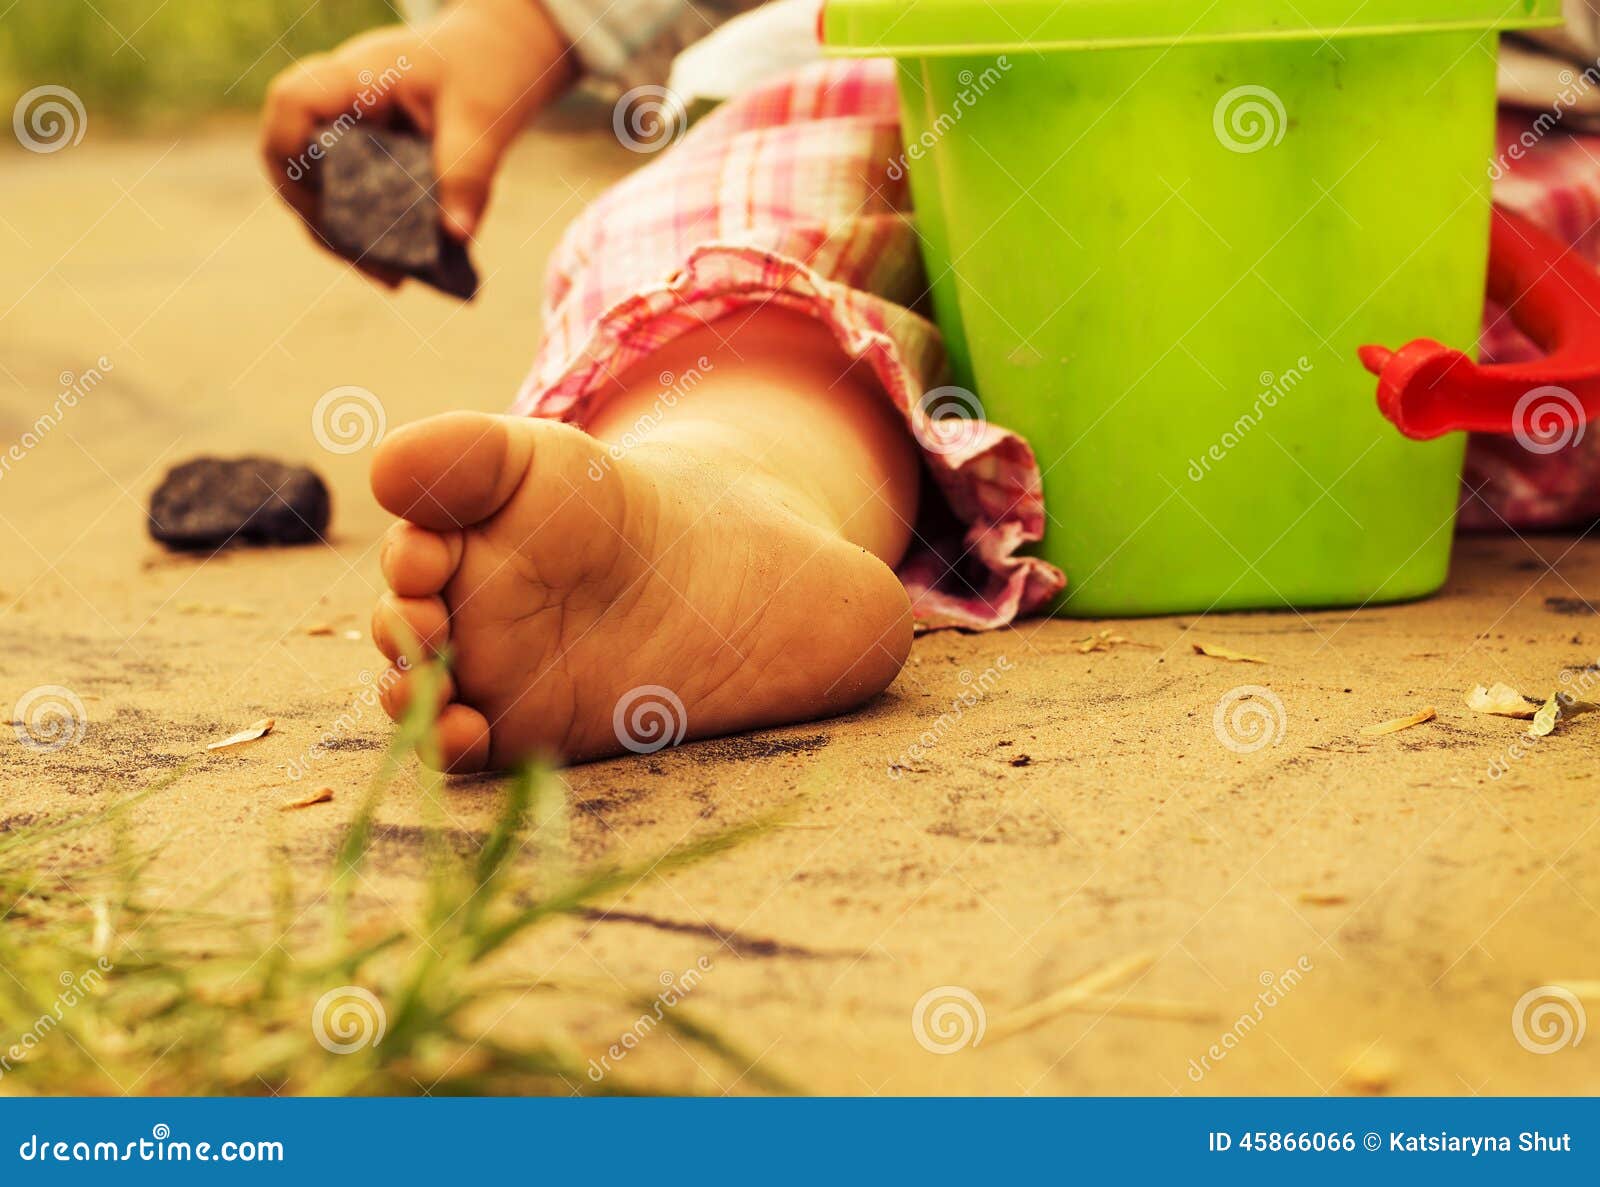 children's pinches on warm sand